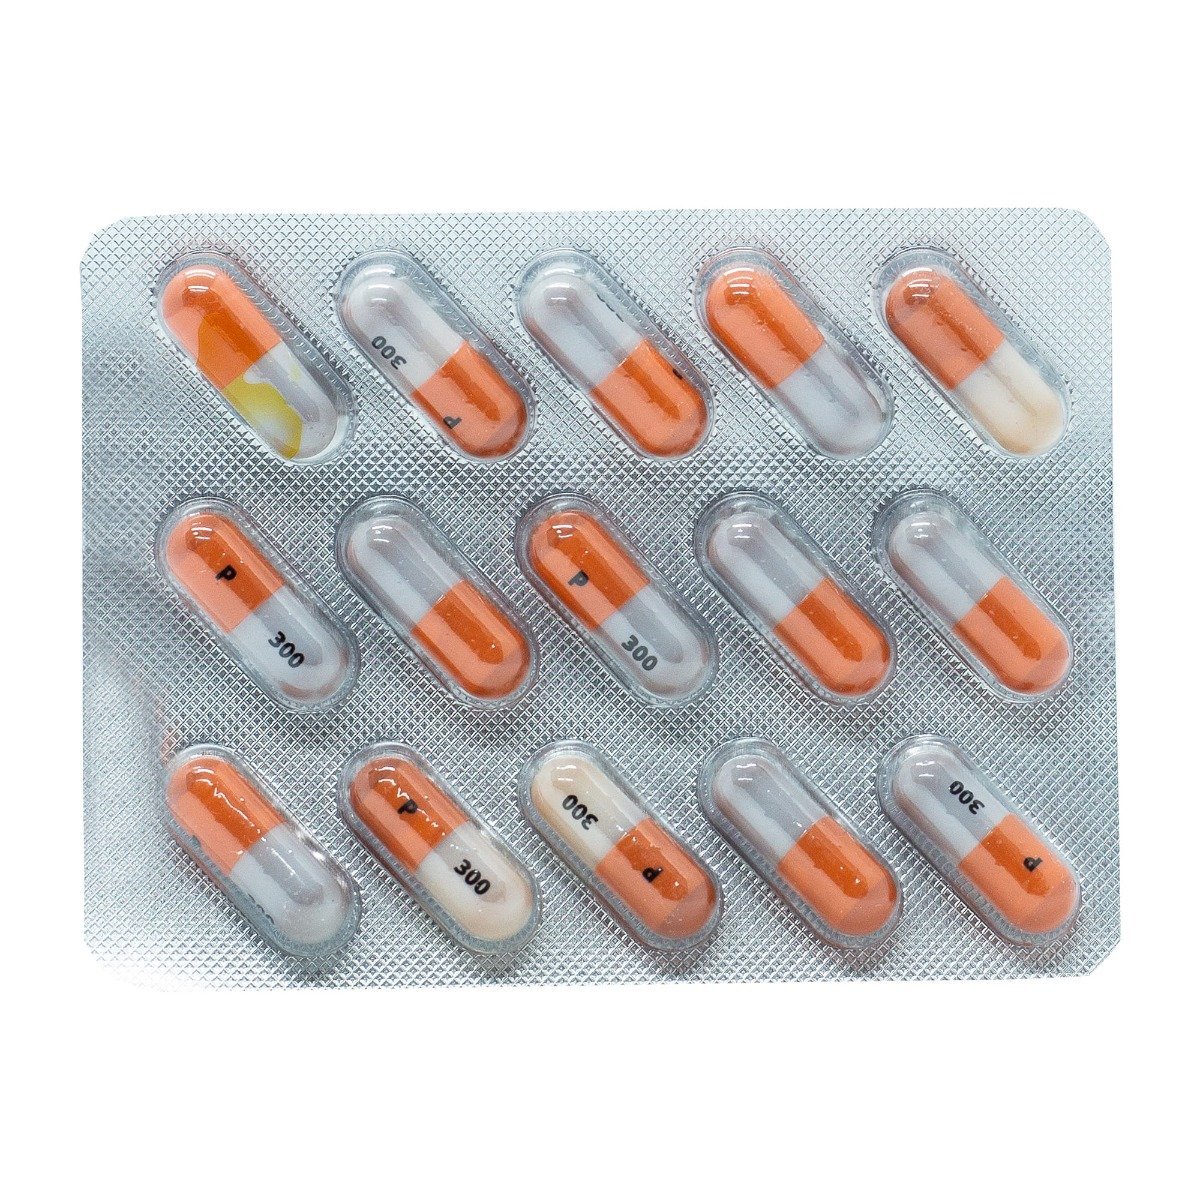 Piascledine 300 mg - 15 Capsules - Bloom Pharmacy